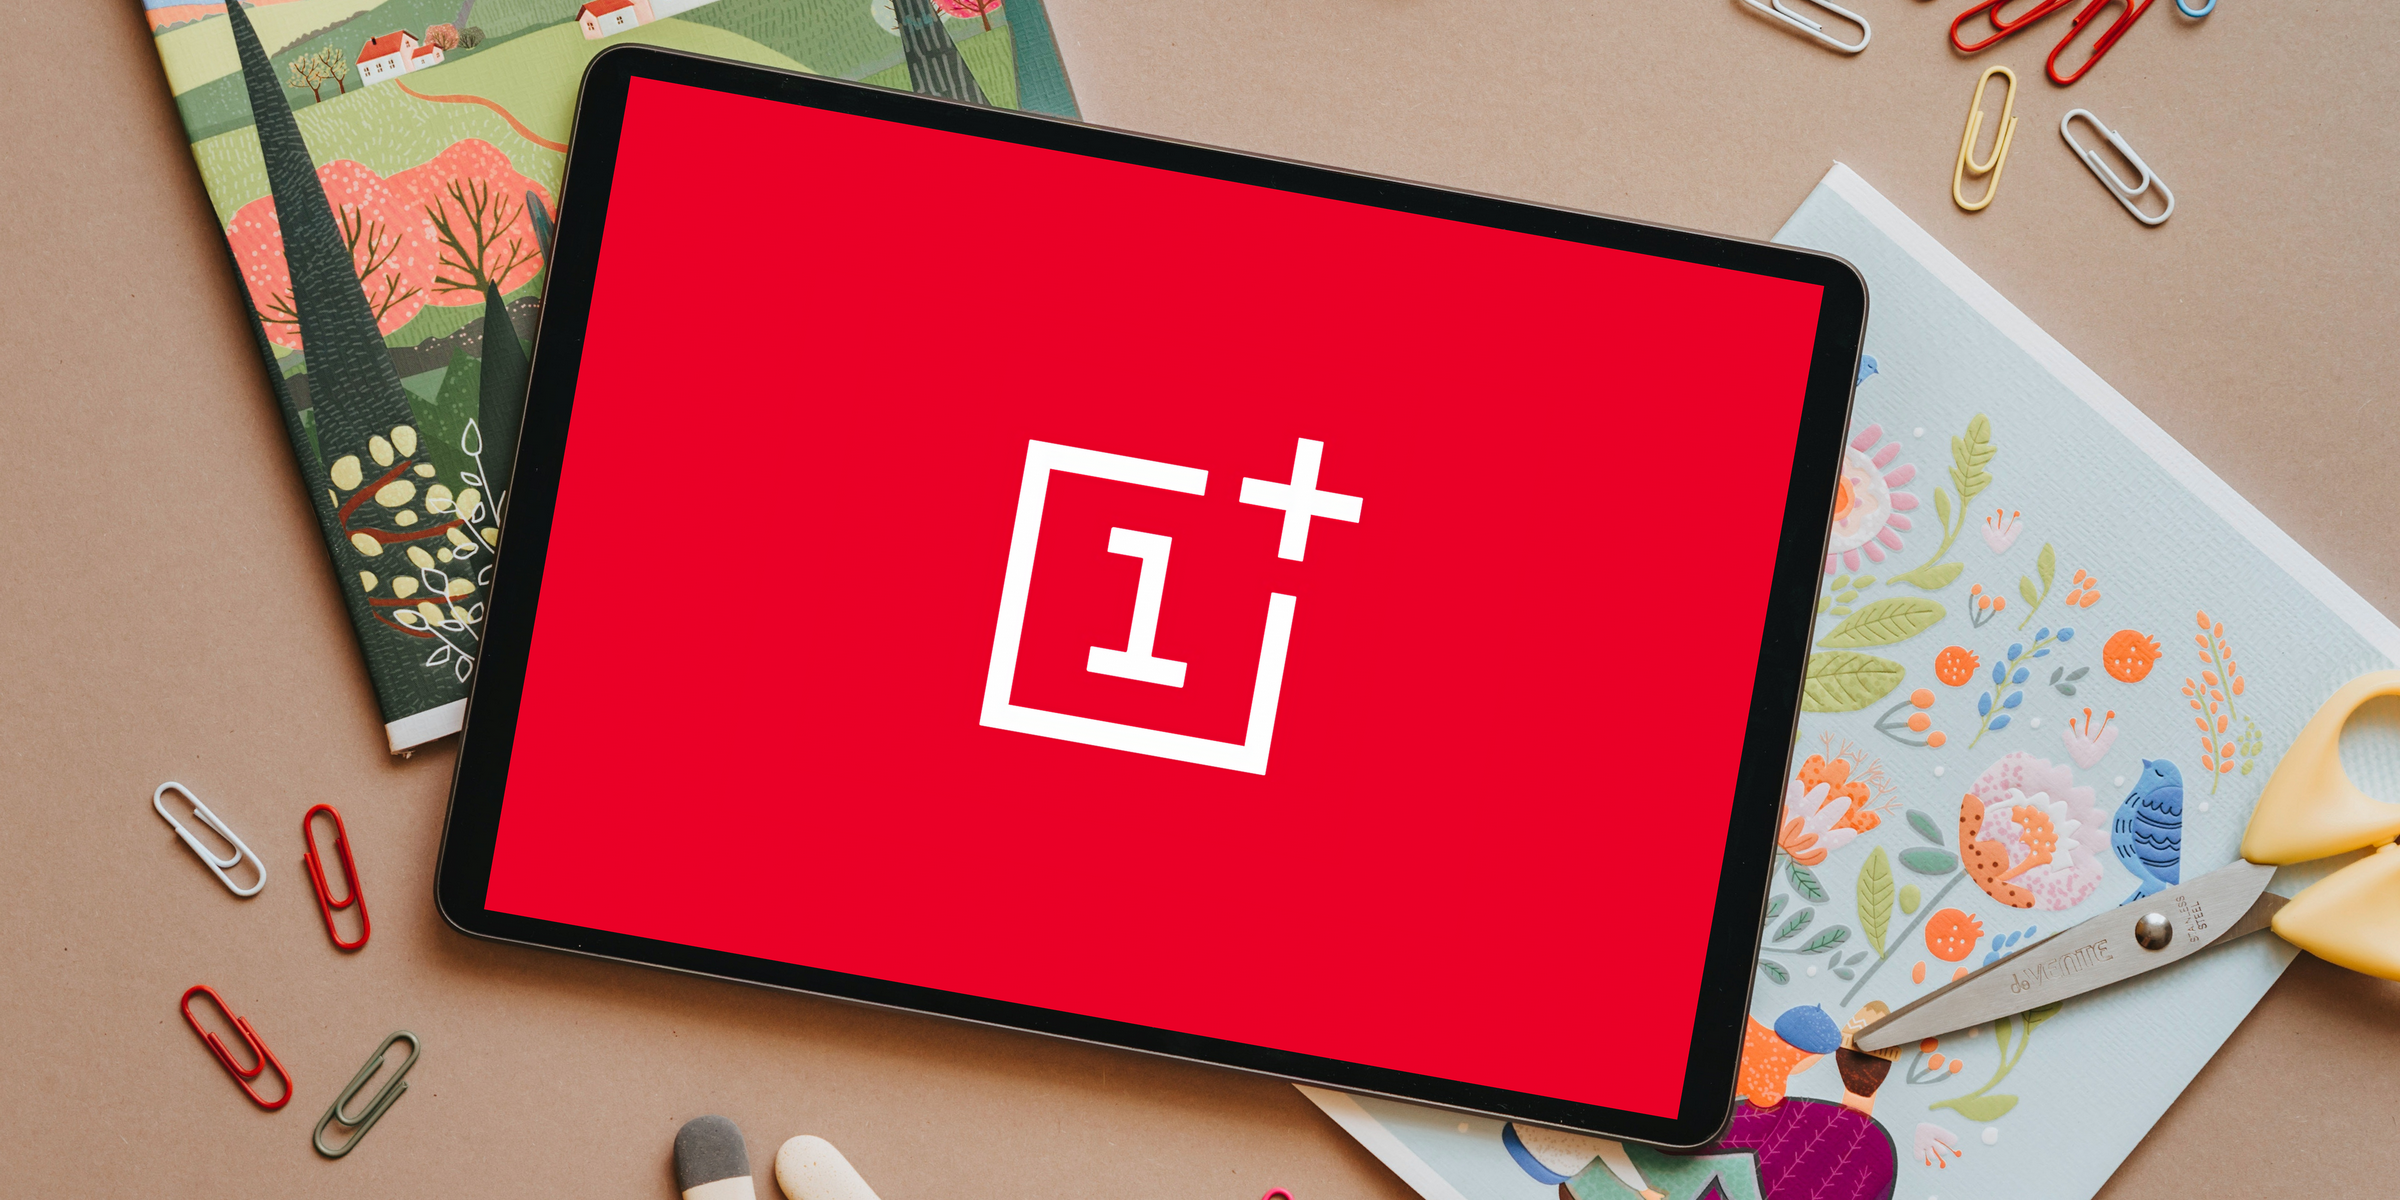 OnePlus está trabajando en su primera tableta, se presentará en 2022